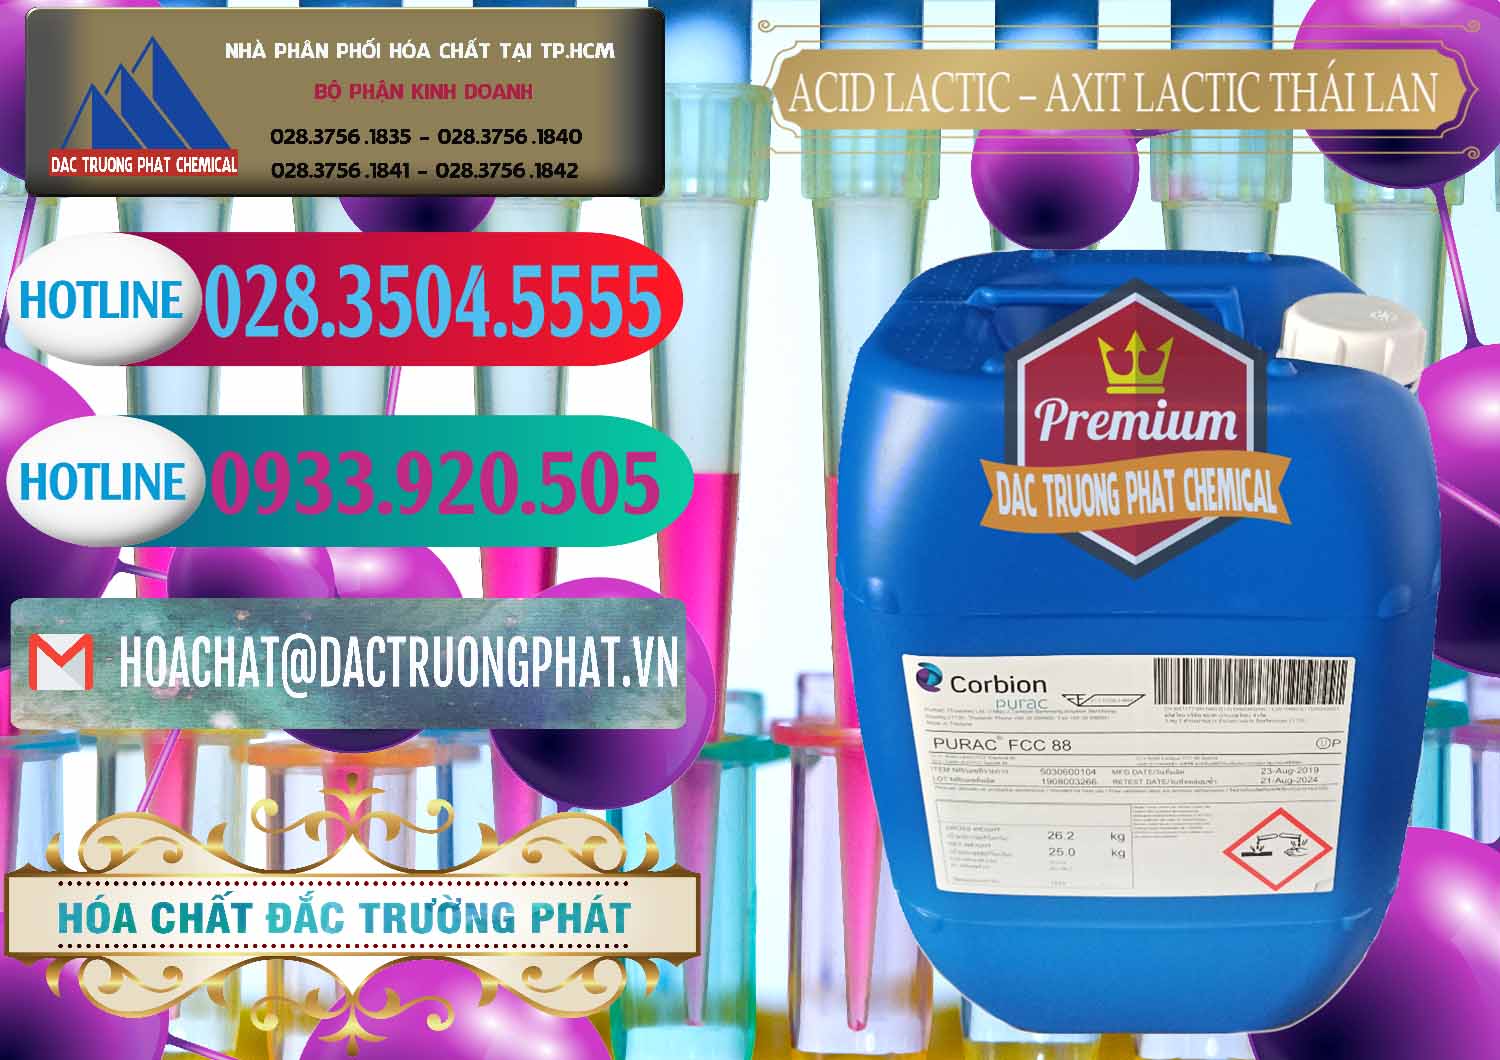 Cty bán ( cung cấp ) Acid Lactic – Axit Lactic Thái Lan Purac FCC 88 - 0012 - Cty chuyên bán & cung cấp hóa chất tại TP.HCM - truongphat.vn